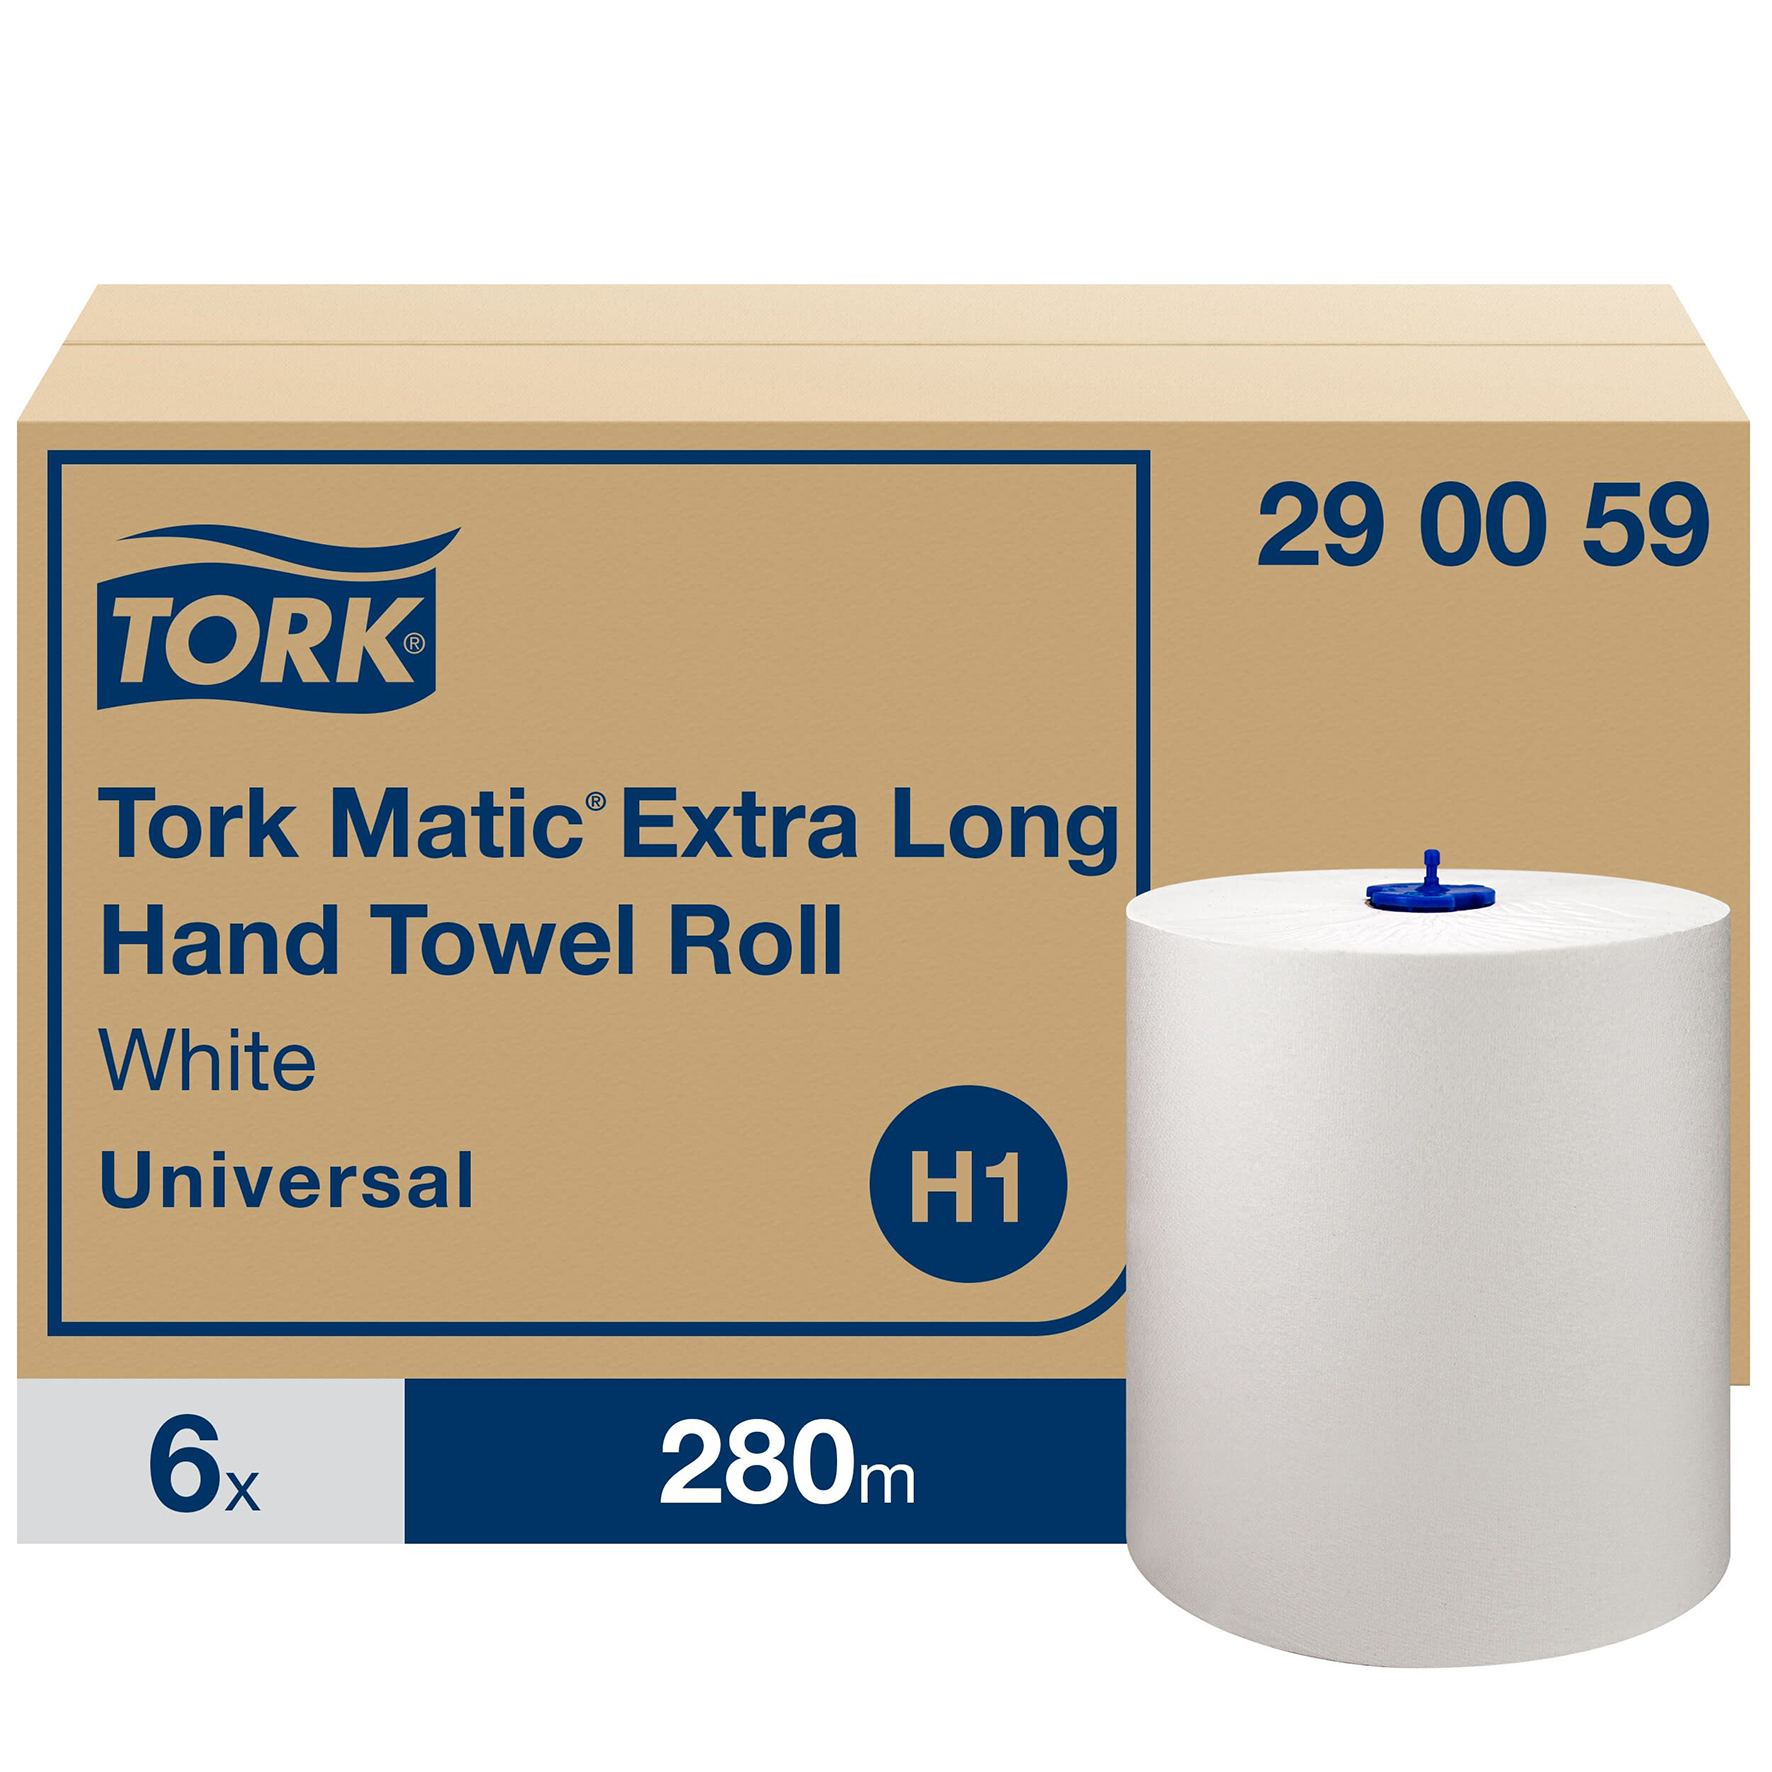 [2514141] Handduk Tork Universal H1 6/kt